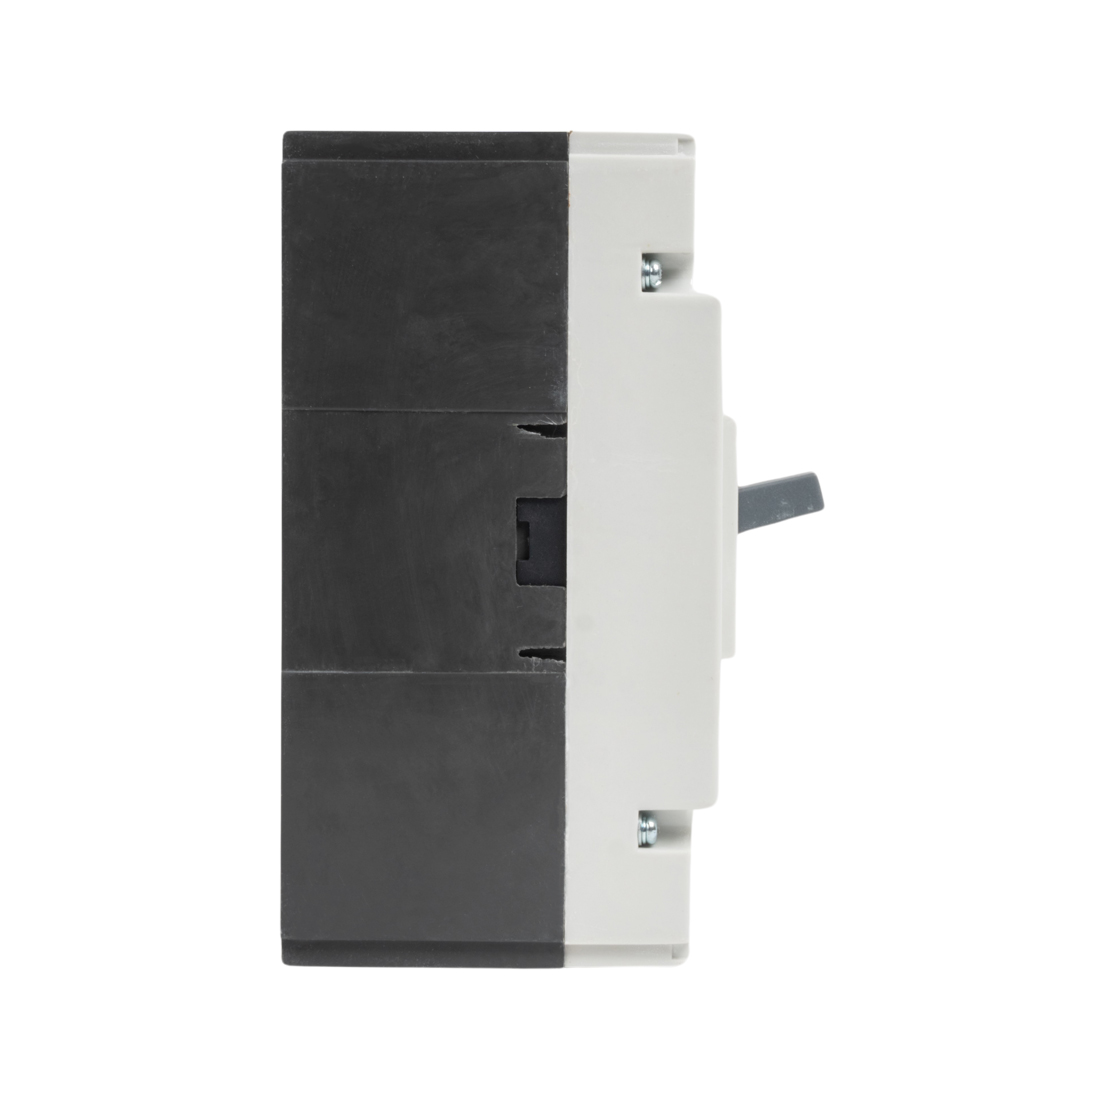 Автоматический выключатель iPower ВА57-250 3P 160A